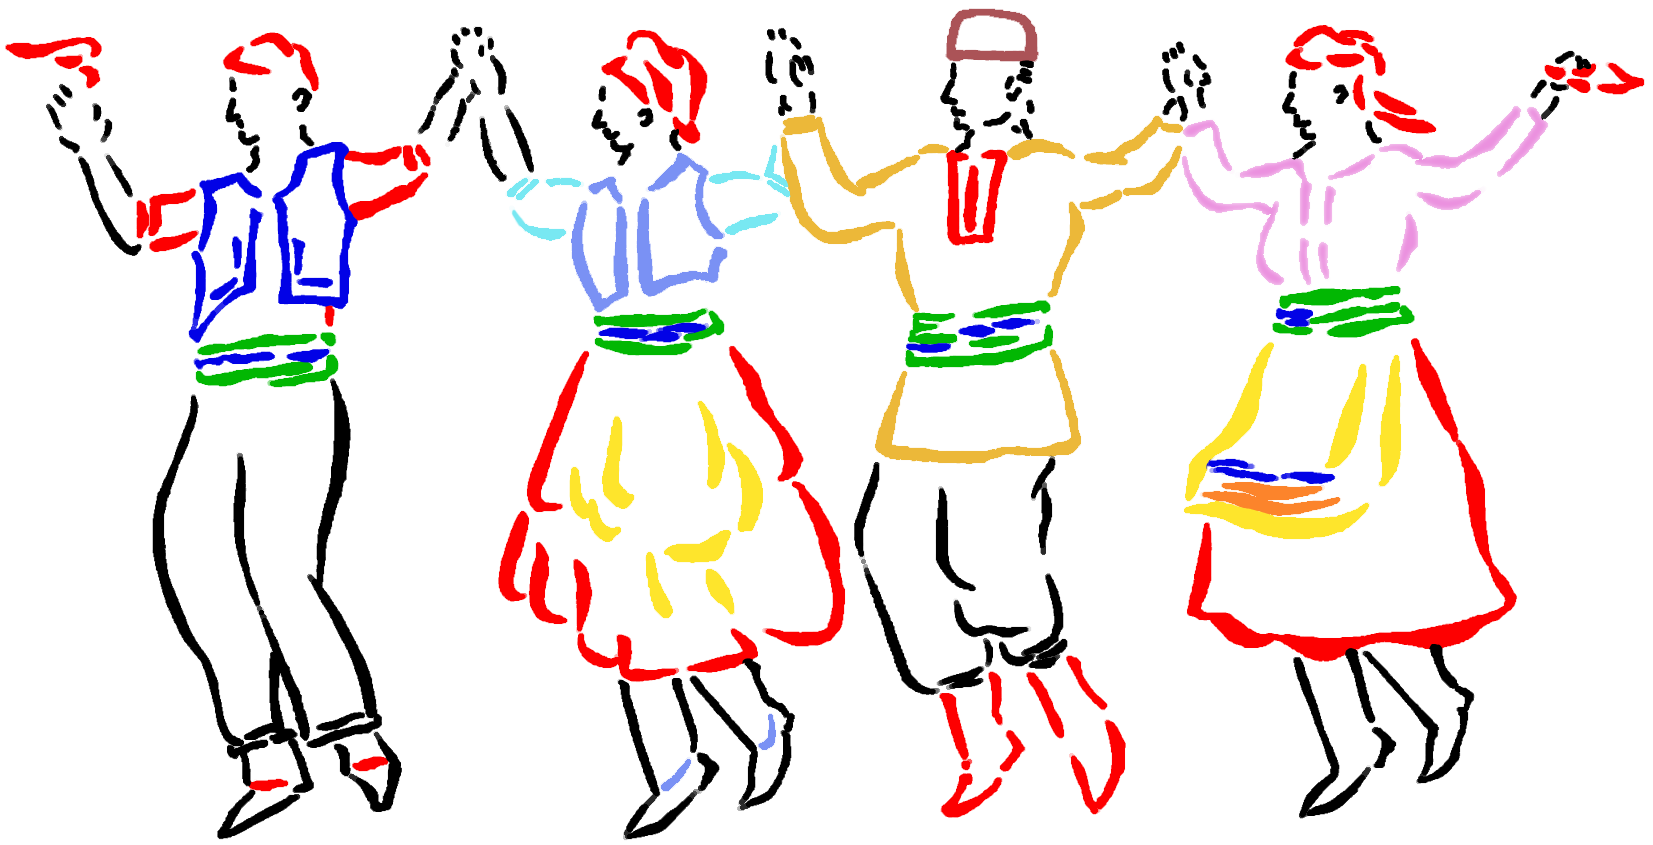 Народный танец рисунок